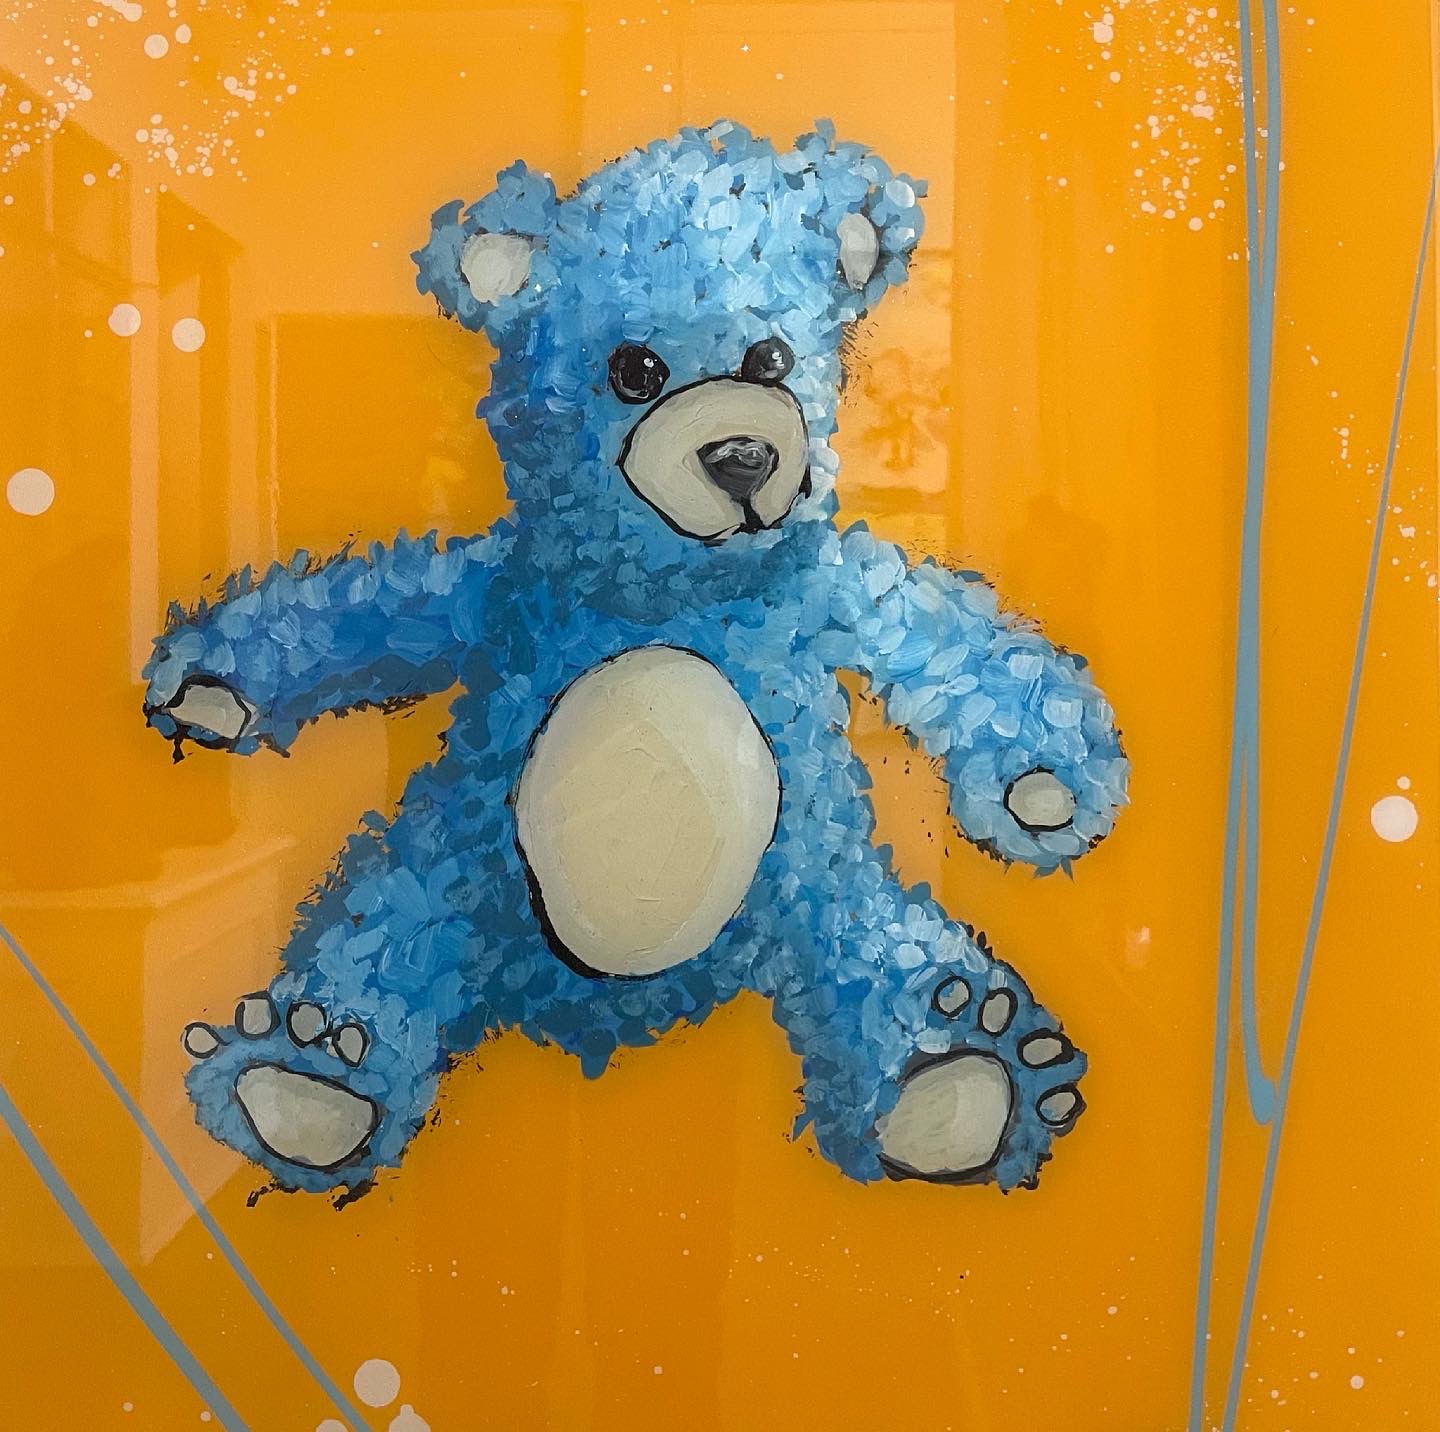 blue teddy bear artwork by Rocky Asbury